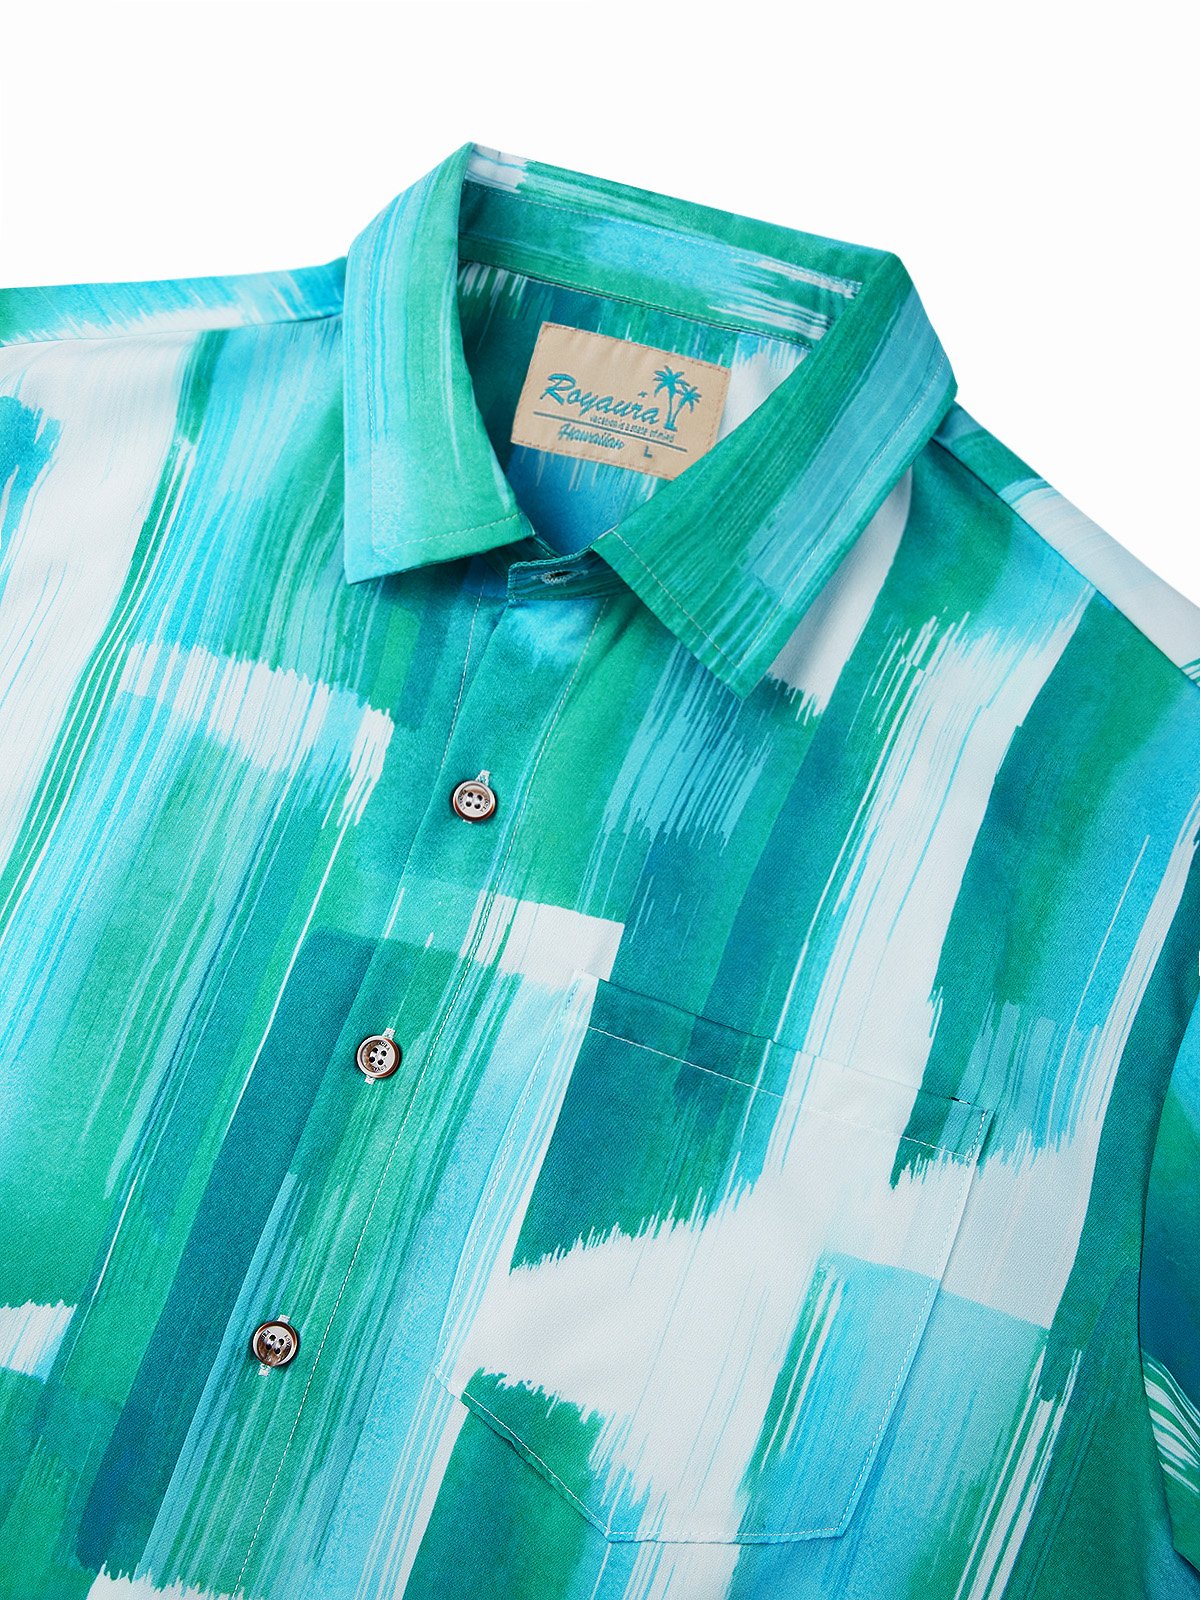 Royaura®  Retro Abstract Textured Print Men's Hawaiian Shirt Easy Care Pocket Camping Shirt